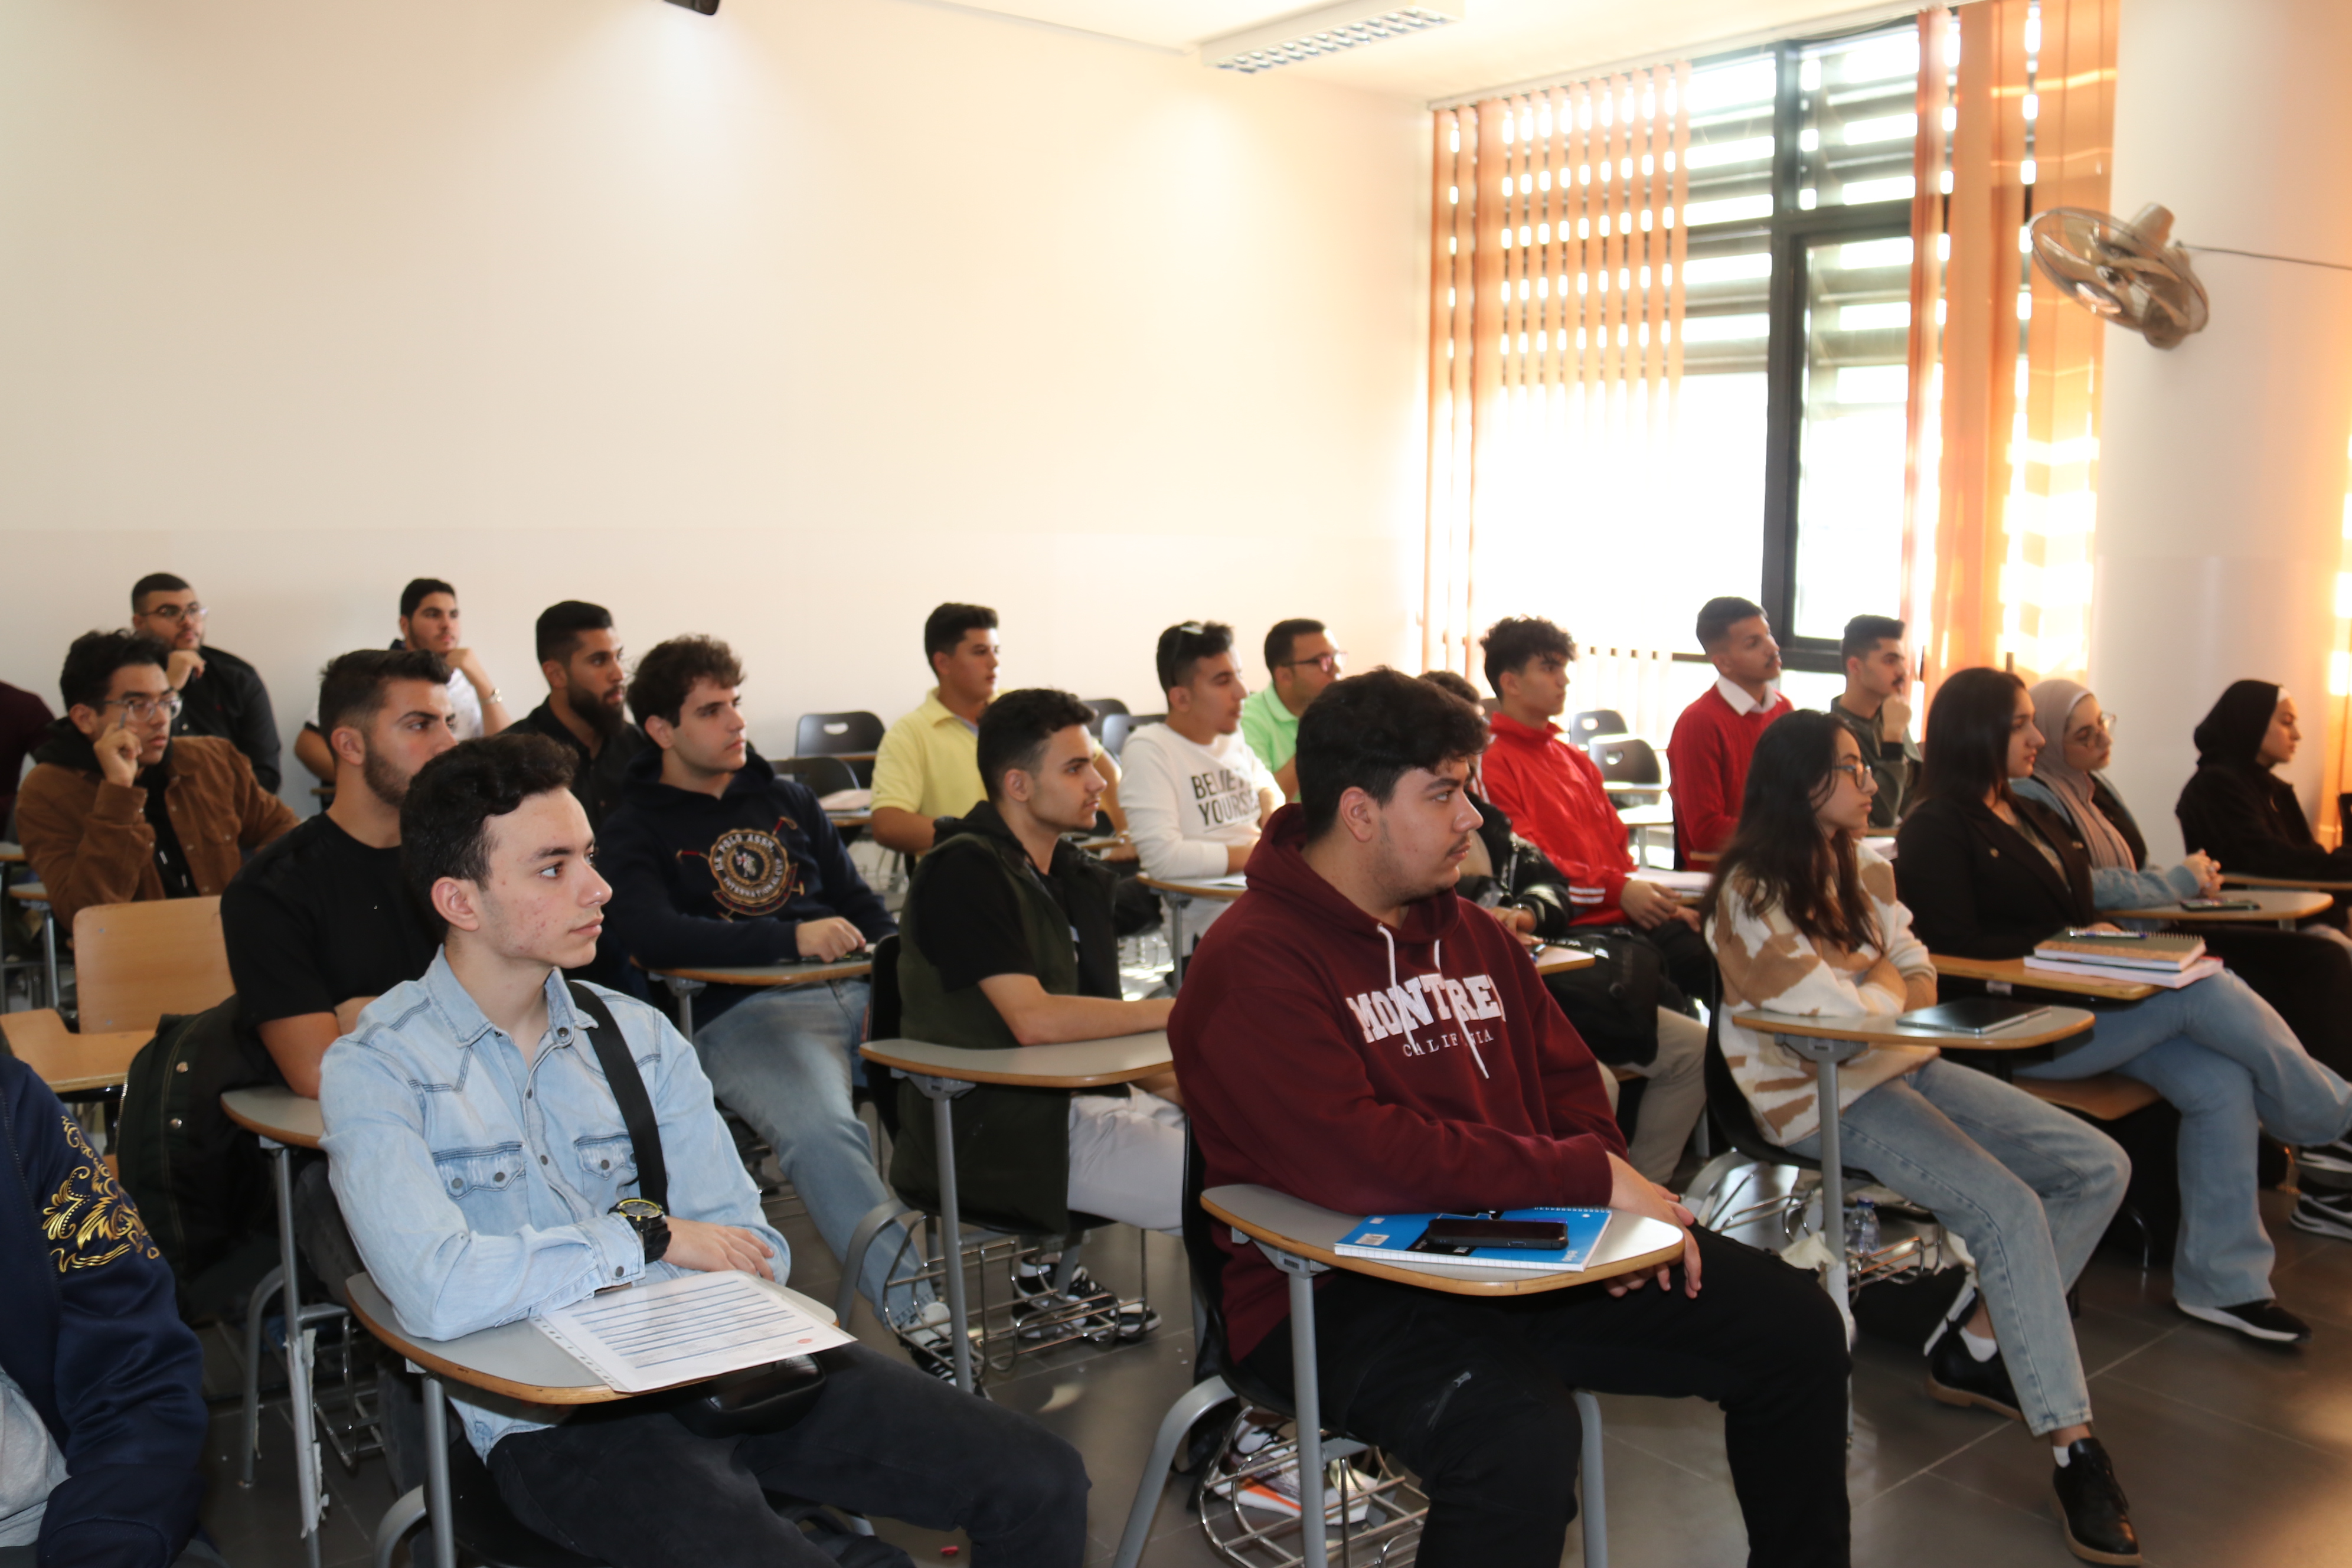 لقاء الطلبة الجدد من كلية علوم الطيران في "عمان العربية" للعام 2022/20233